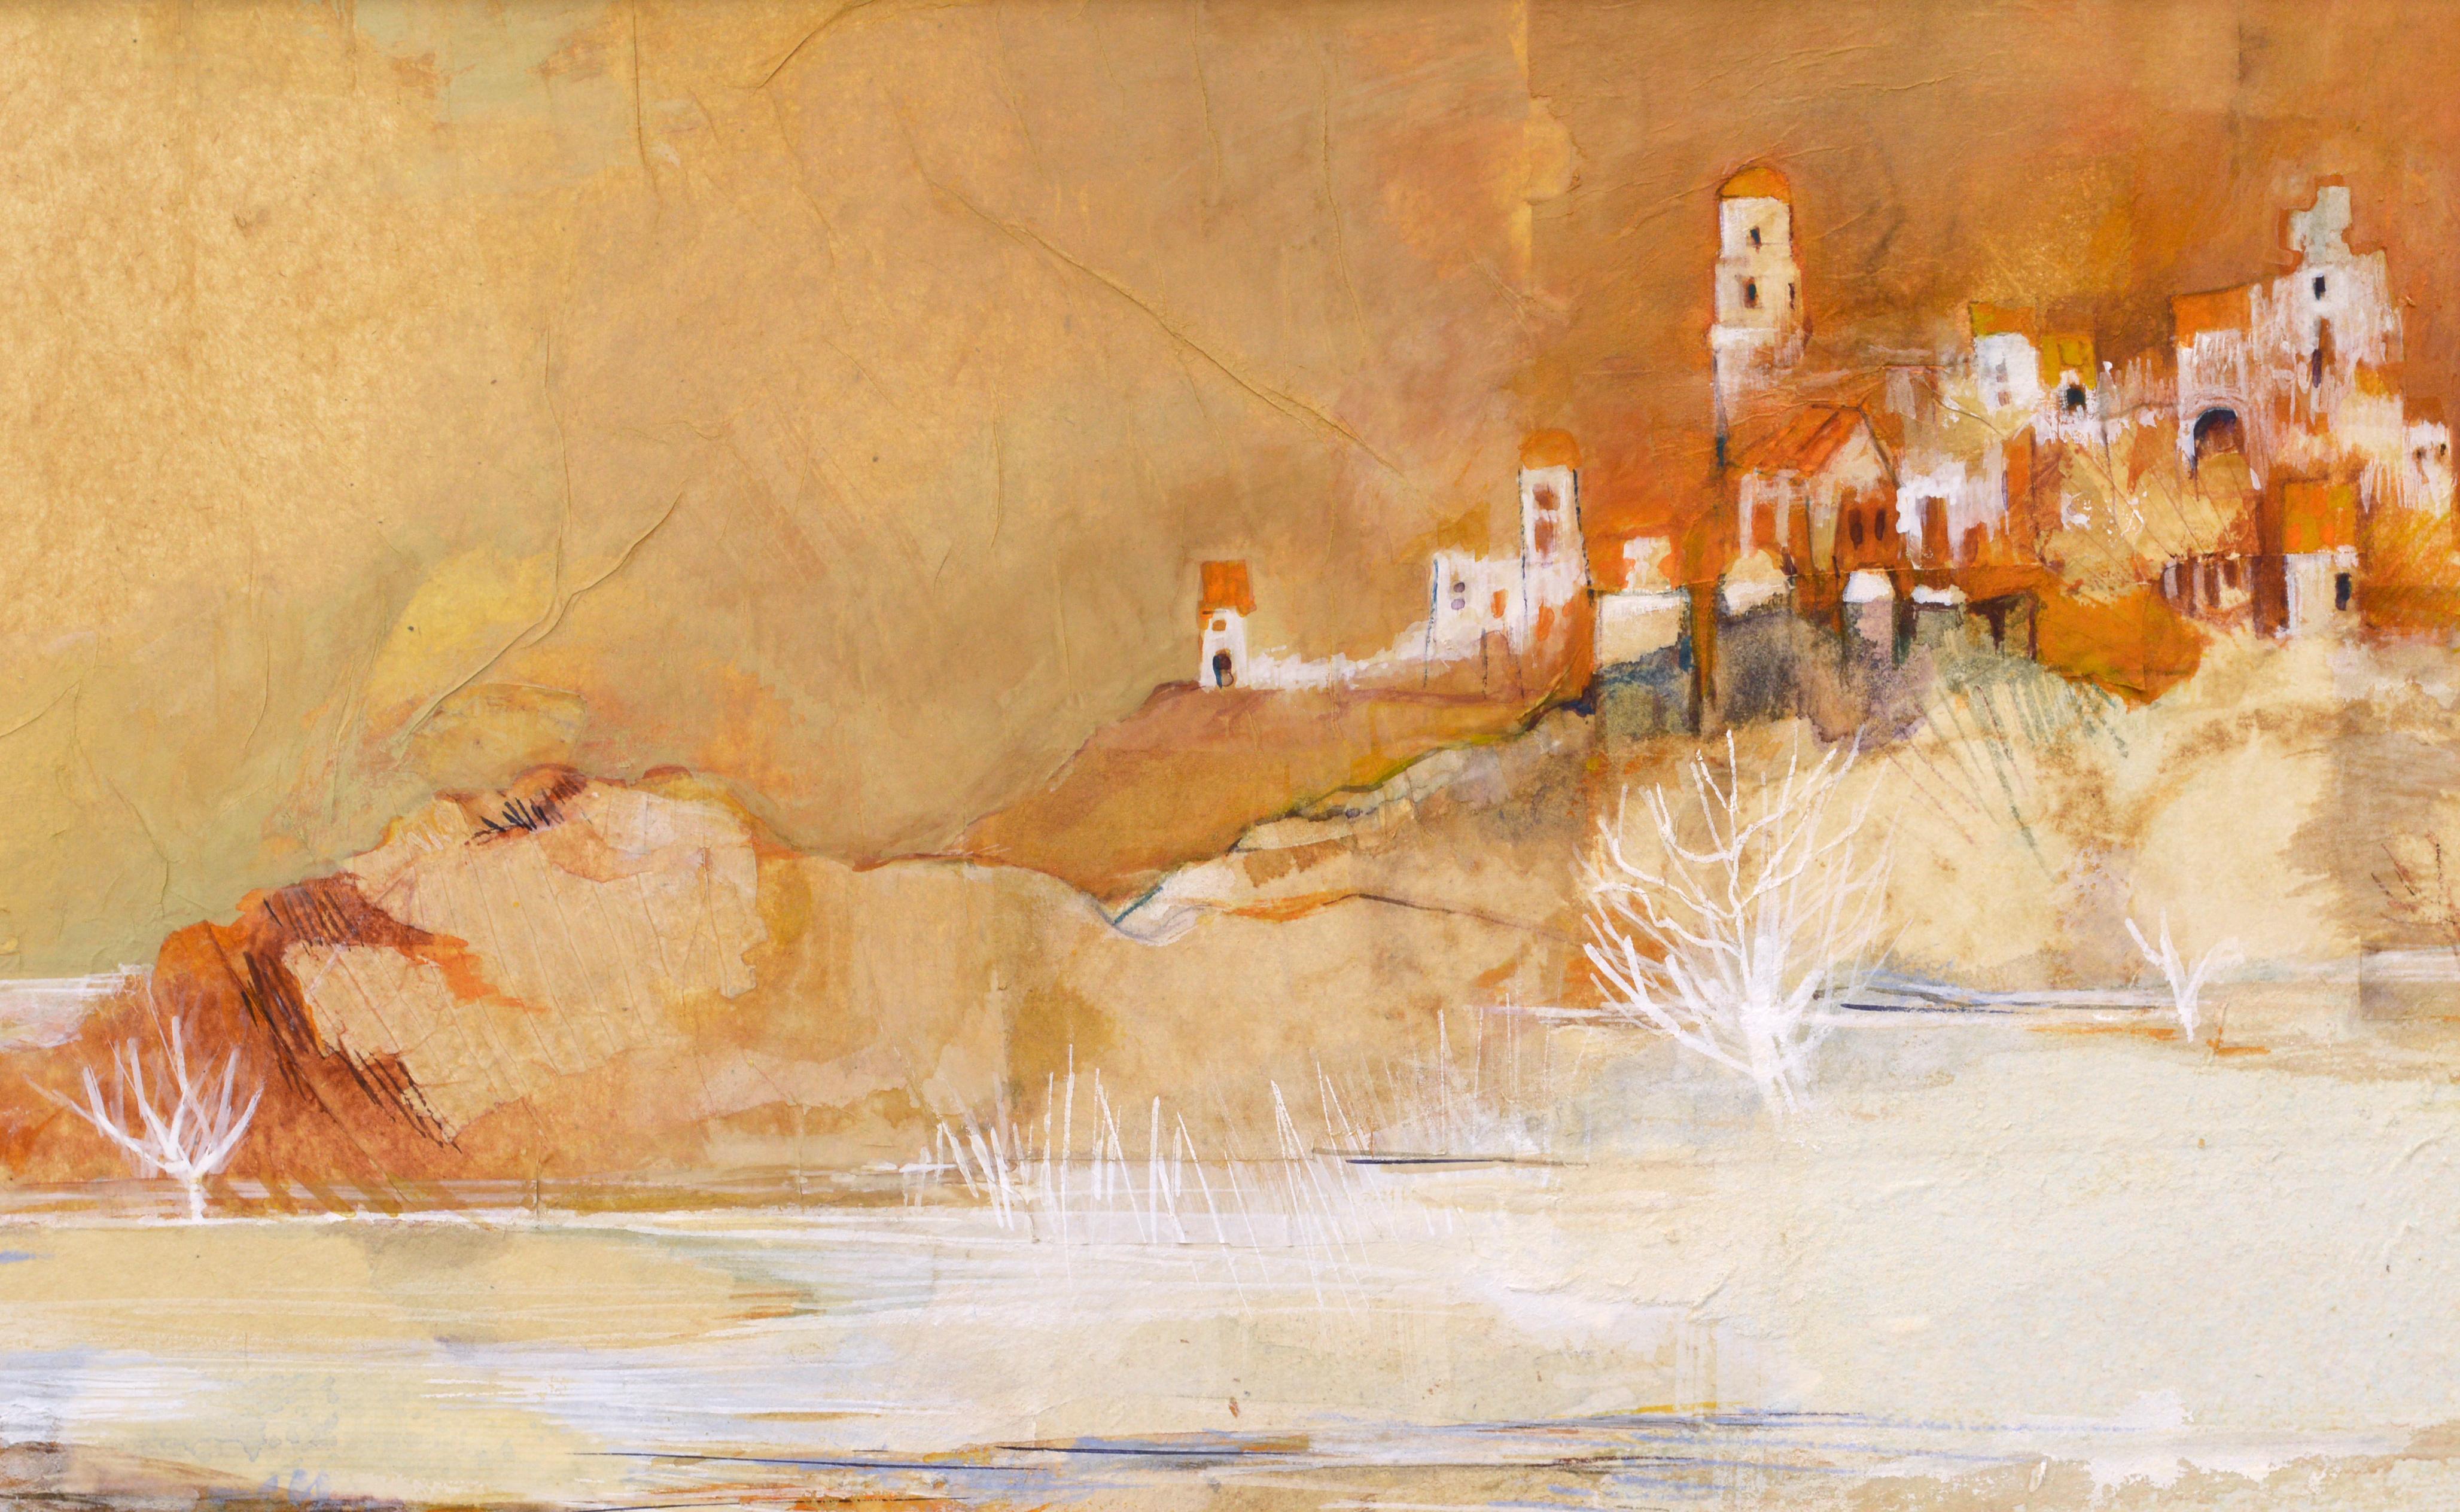 Abstrahierte Landschaftskomposition in Mischtechnik auf Büttenpapier mit einer Stadt am Rande eines Sees, in monochromen Orangetönen mit weißen Akzenten, von Grace Eichholz (Amerikanerin, geb. 1927). Signiert 